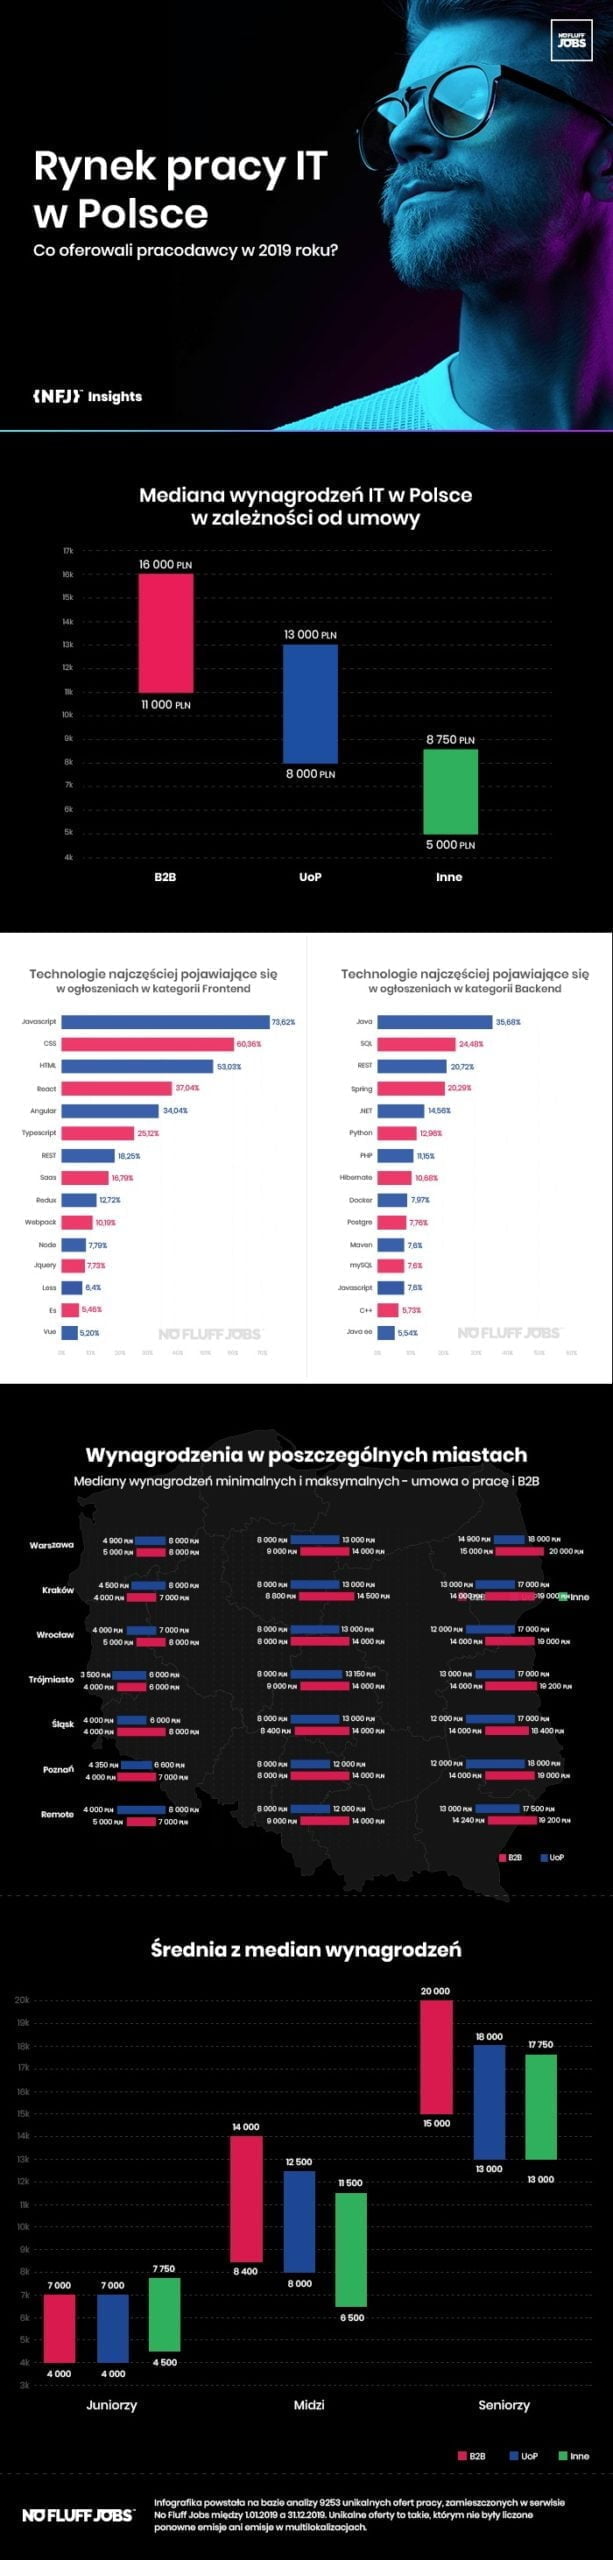 rynek pracy it w polsce 2019 raport no fluff jobs info